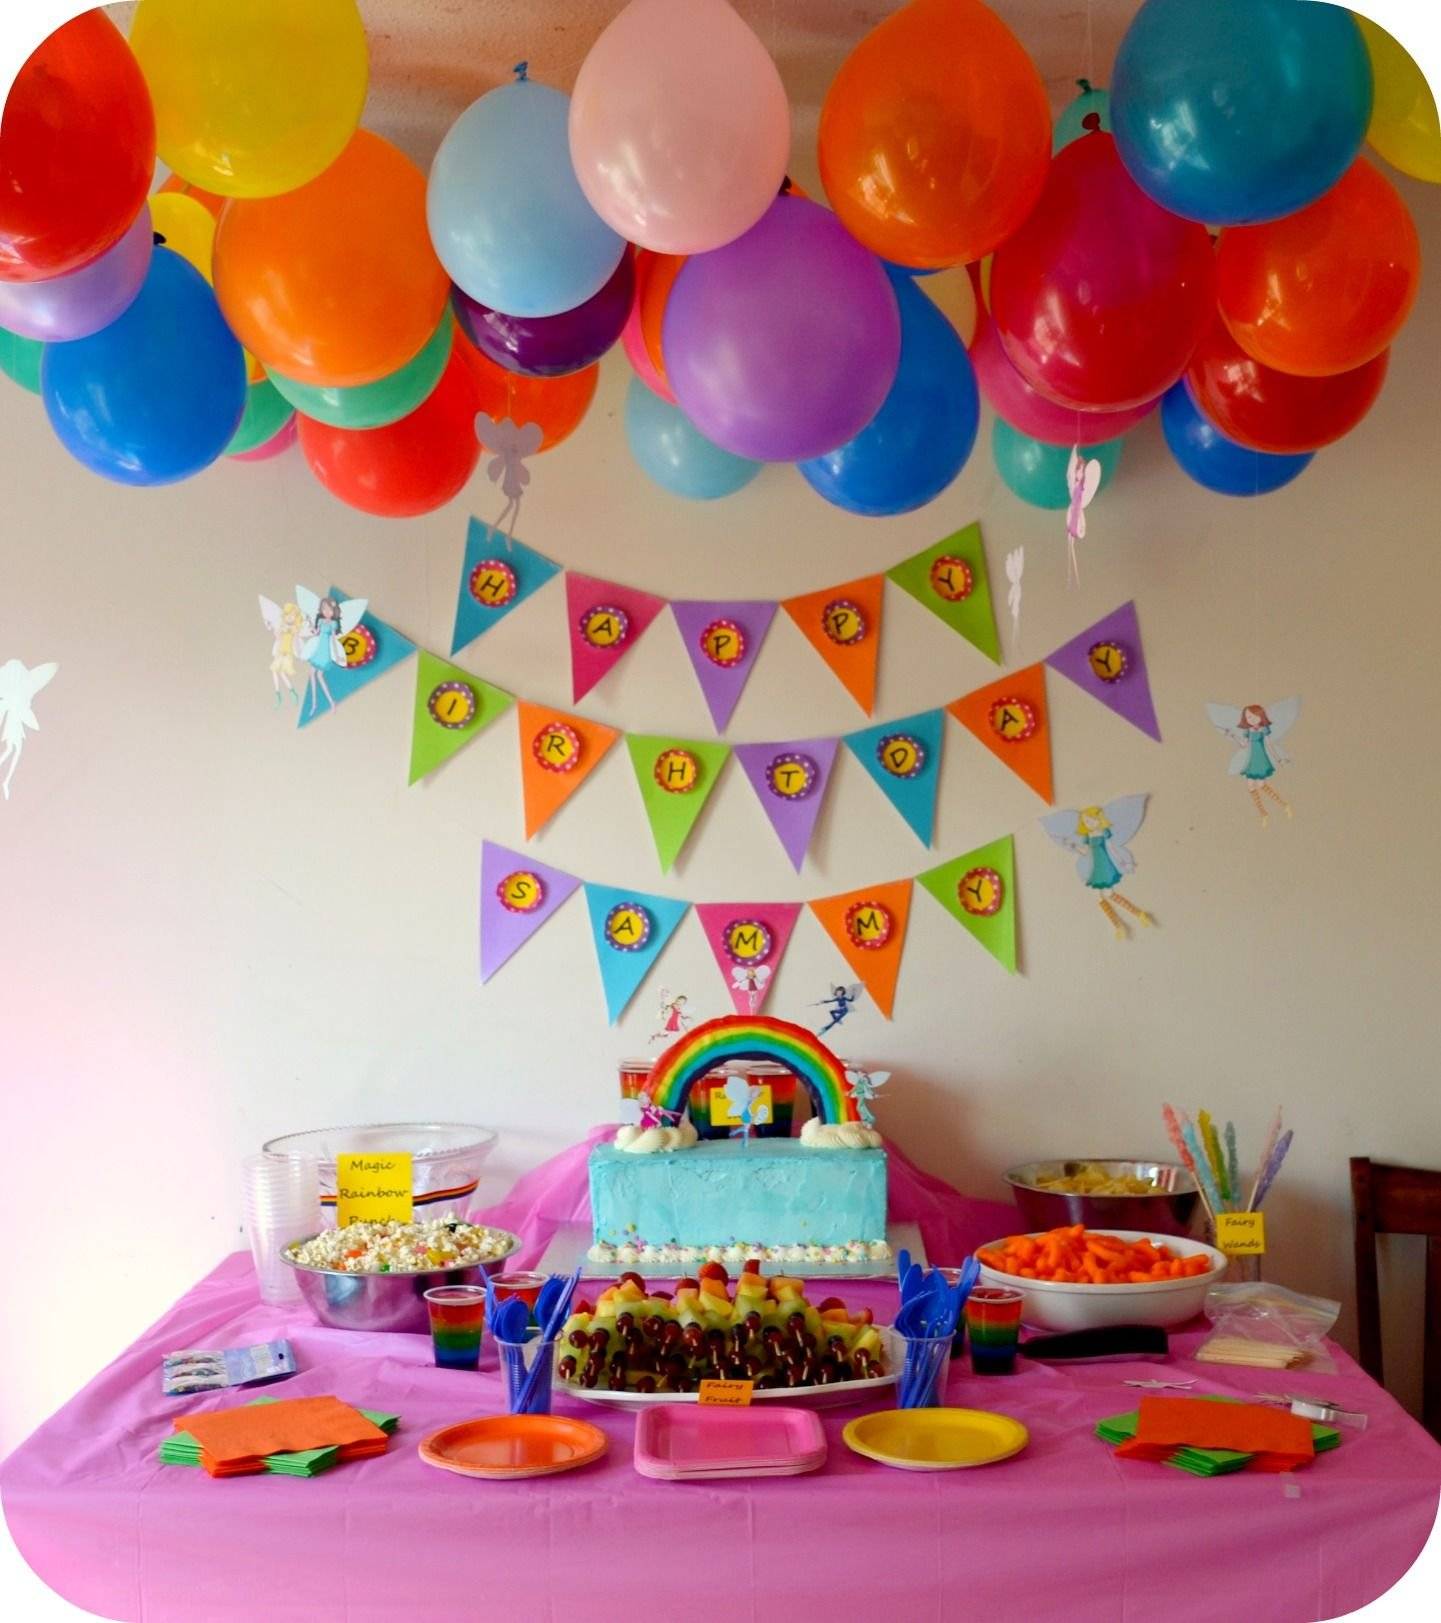 Как украсить комнату на день рождения своими руками, украшение комнаты на день рождения ребенка